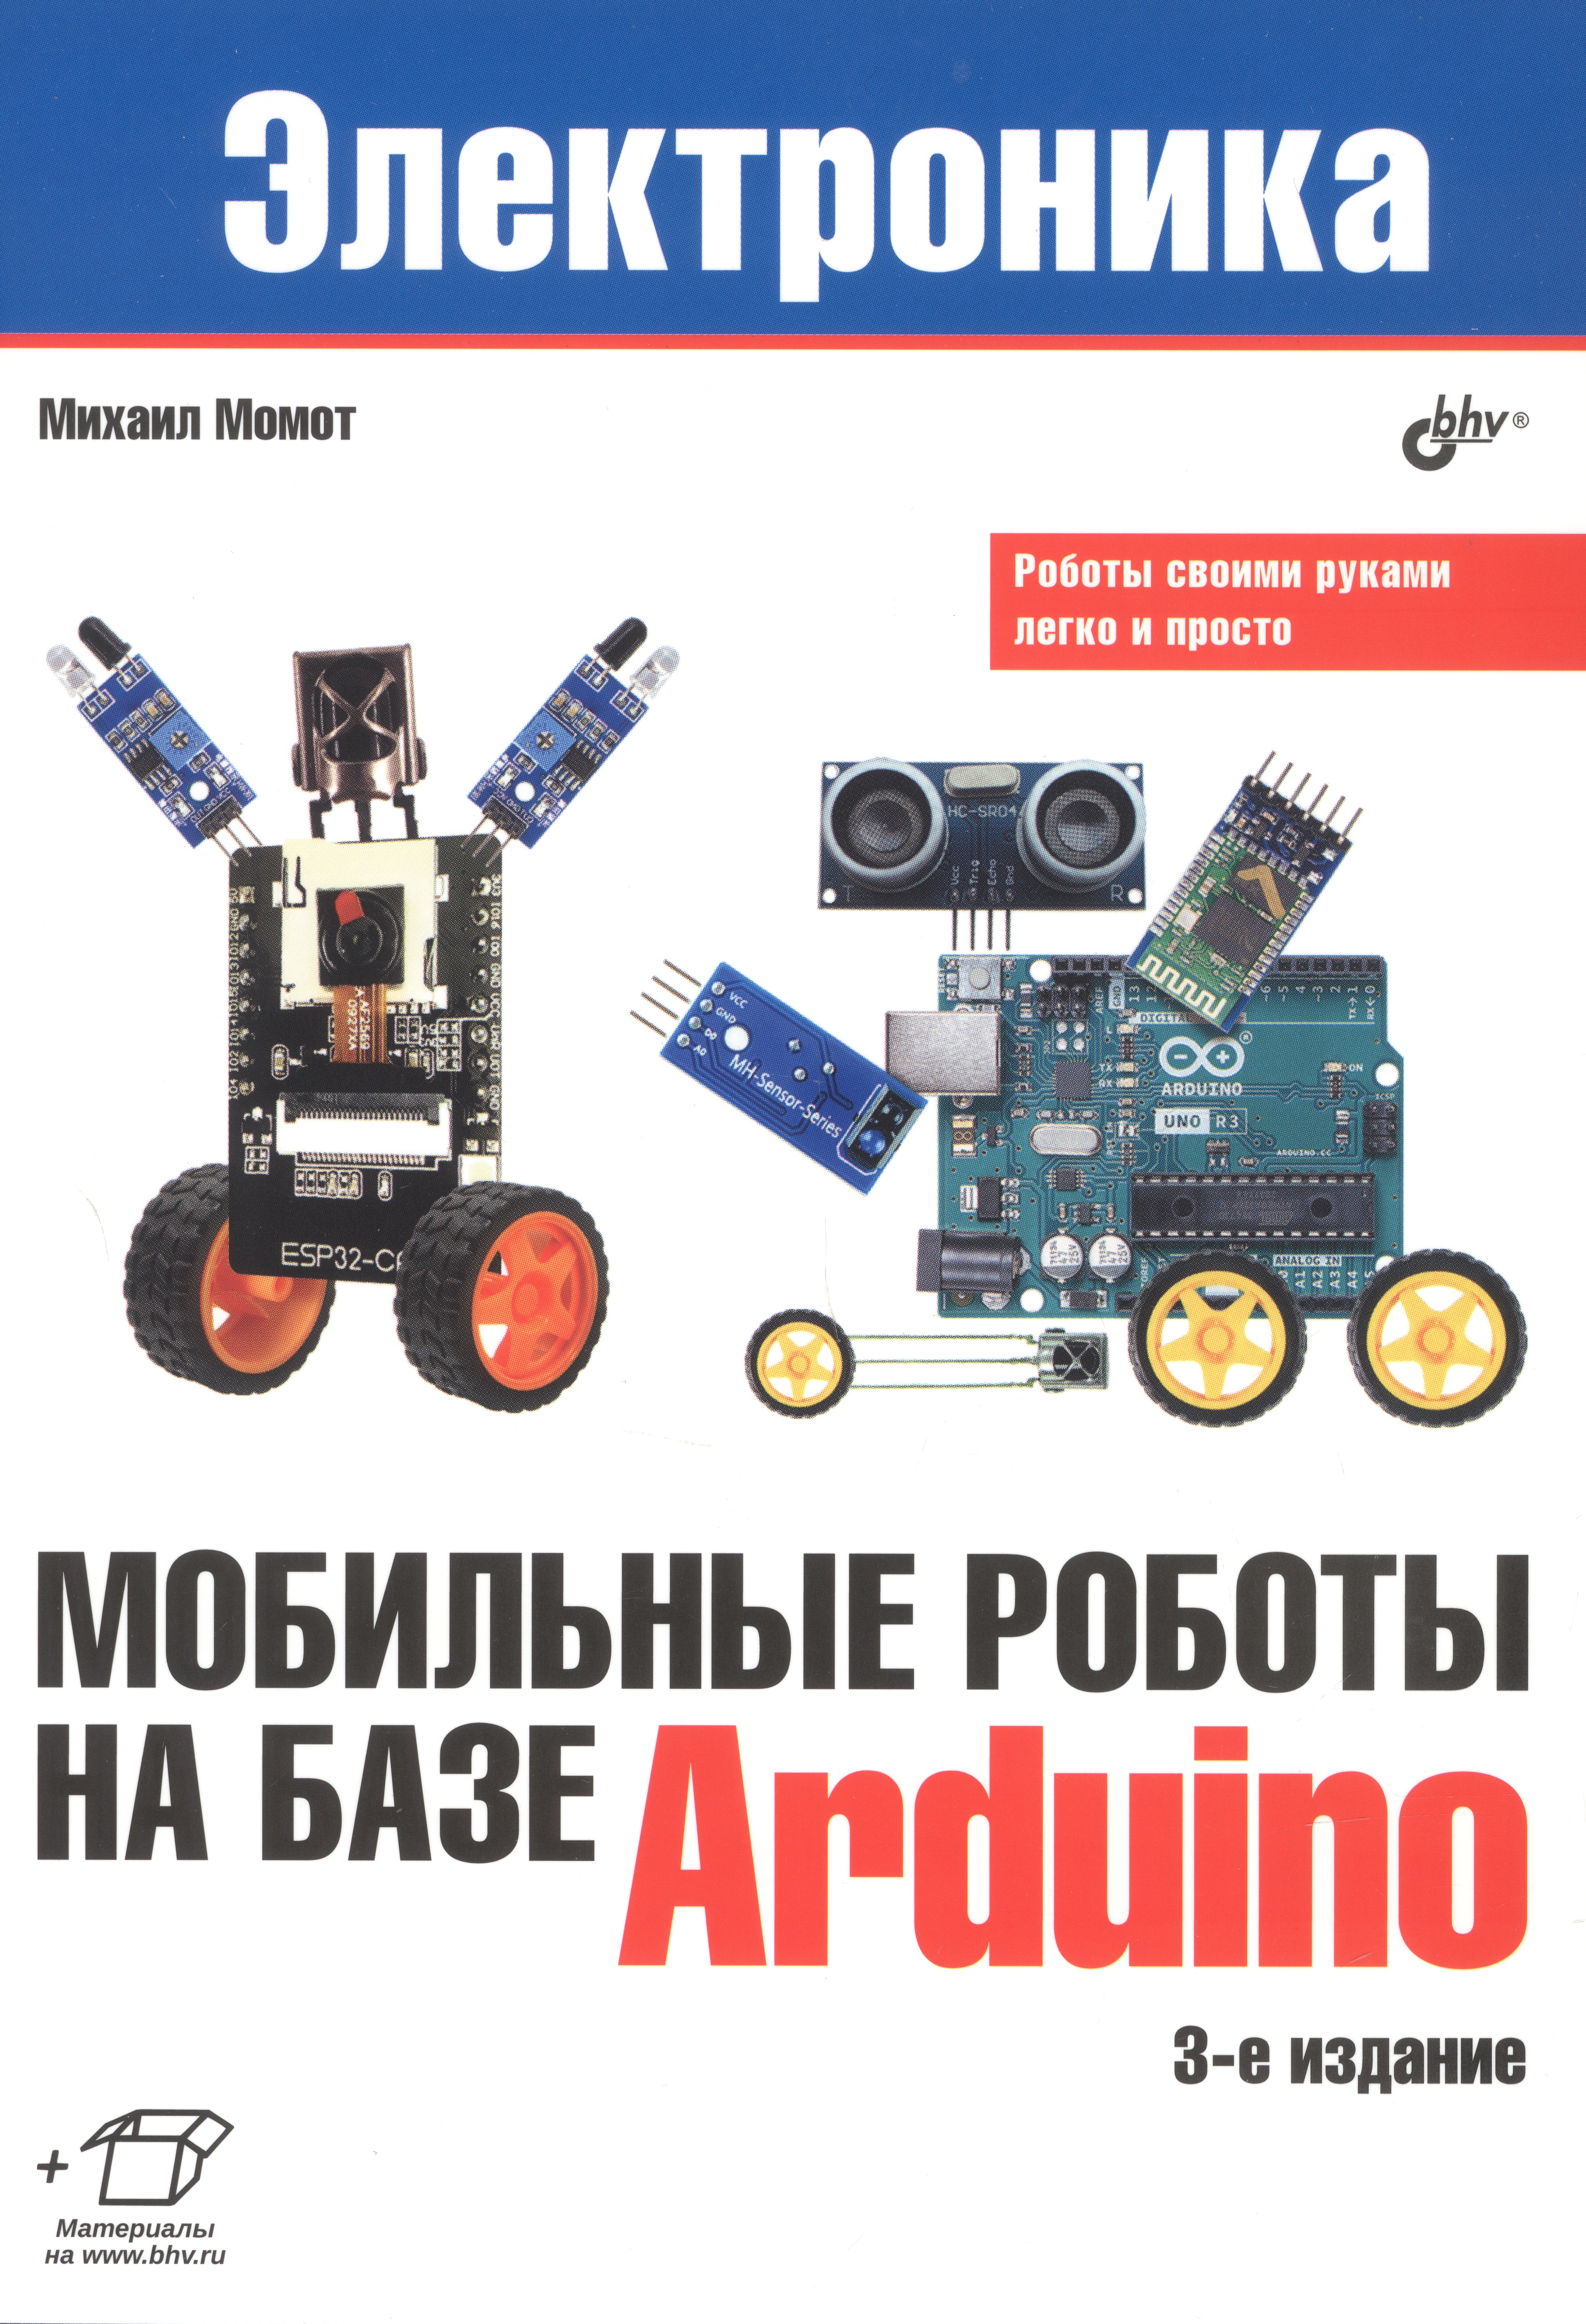 момот м электроника мобильные роботы на базе arduino Мобильные роботы на базе Arduino. 3-е издание